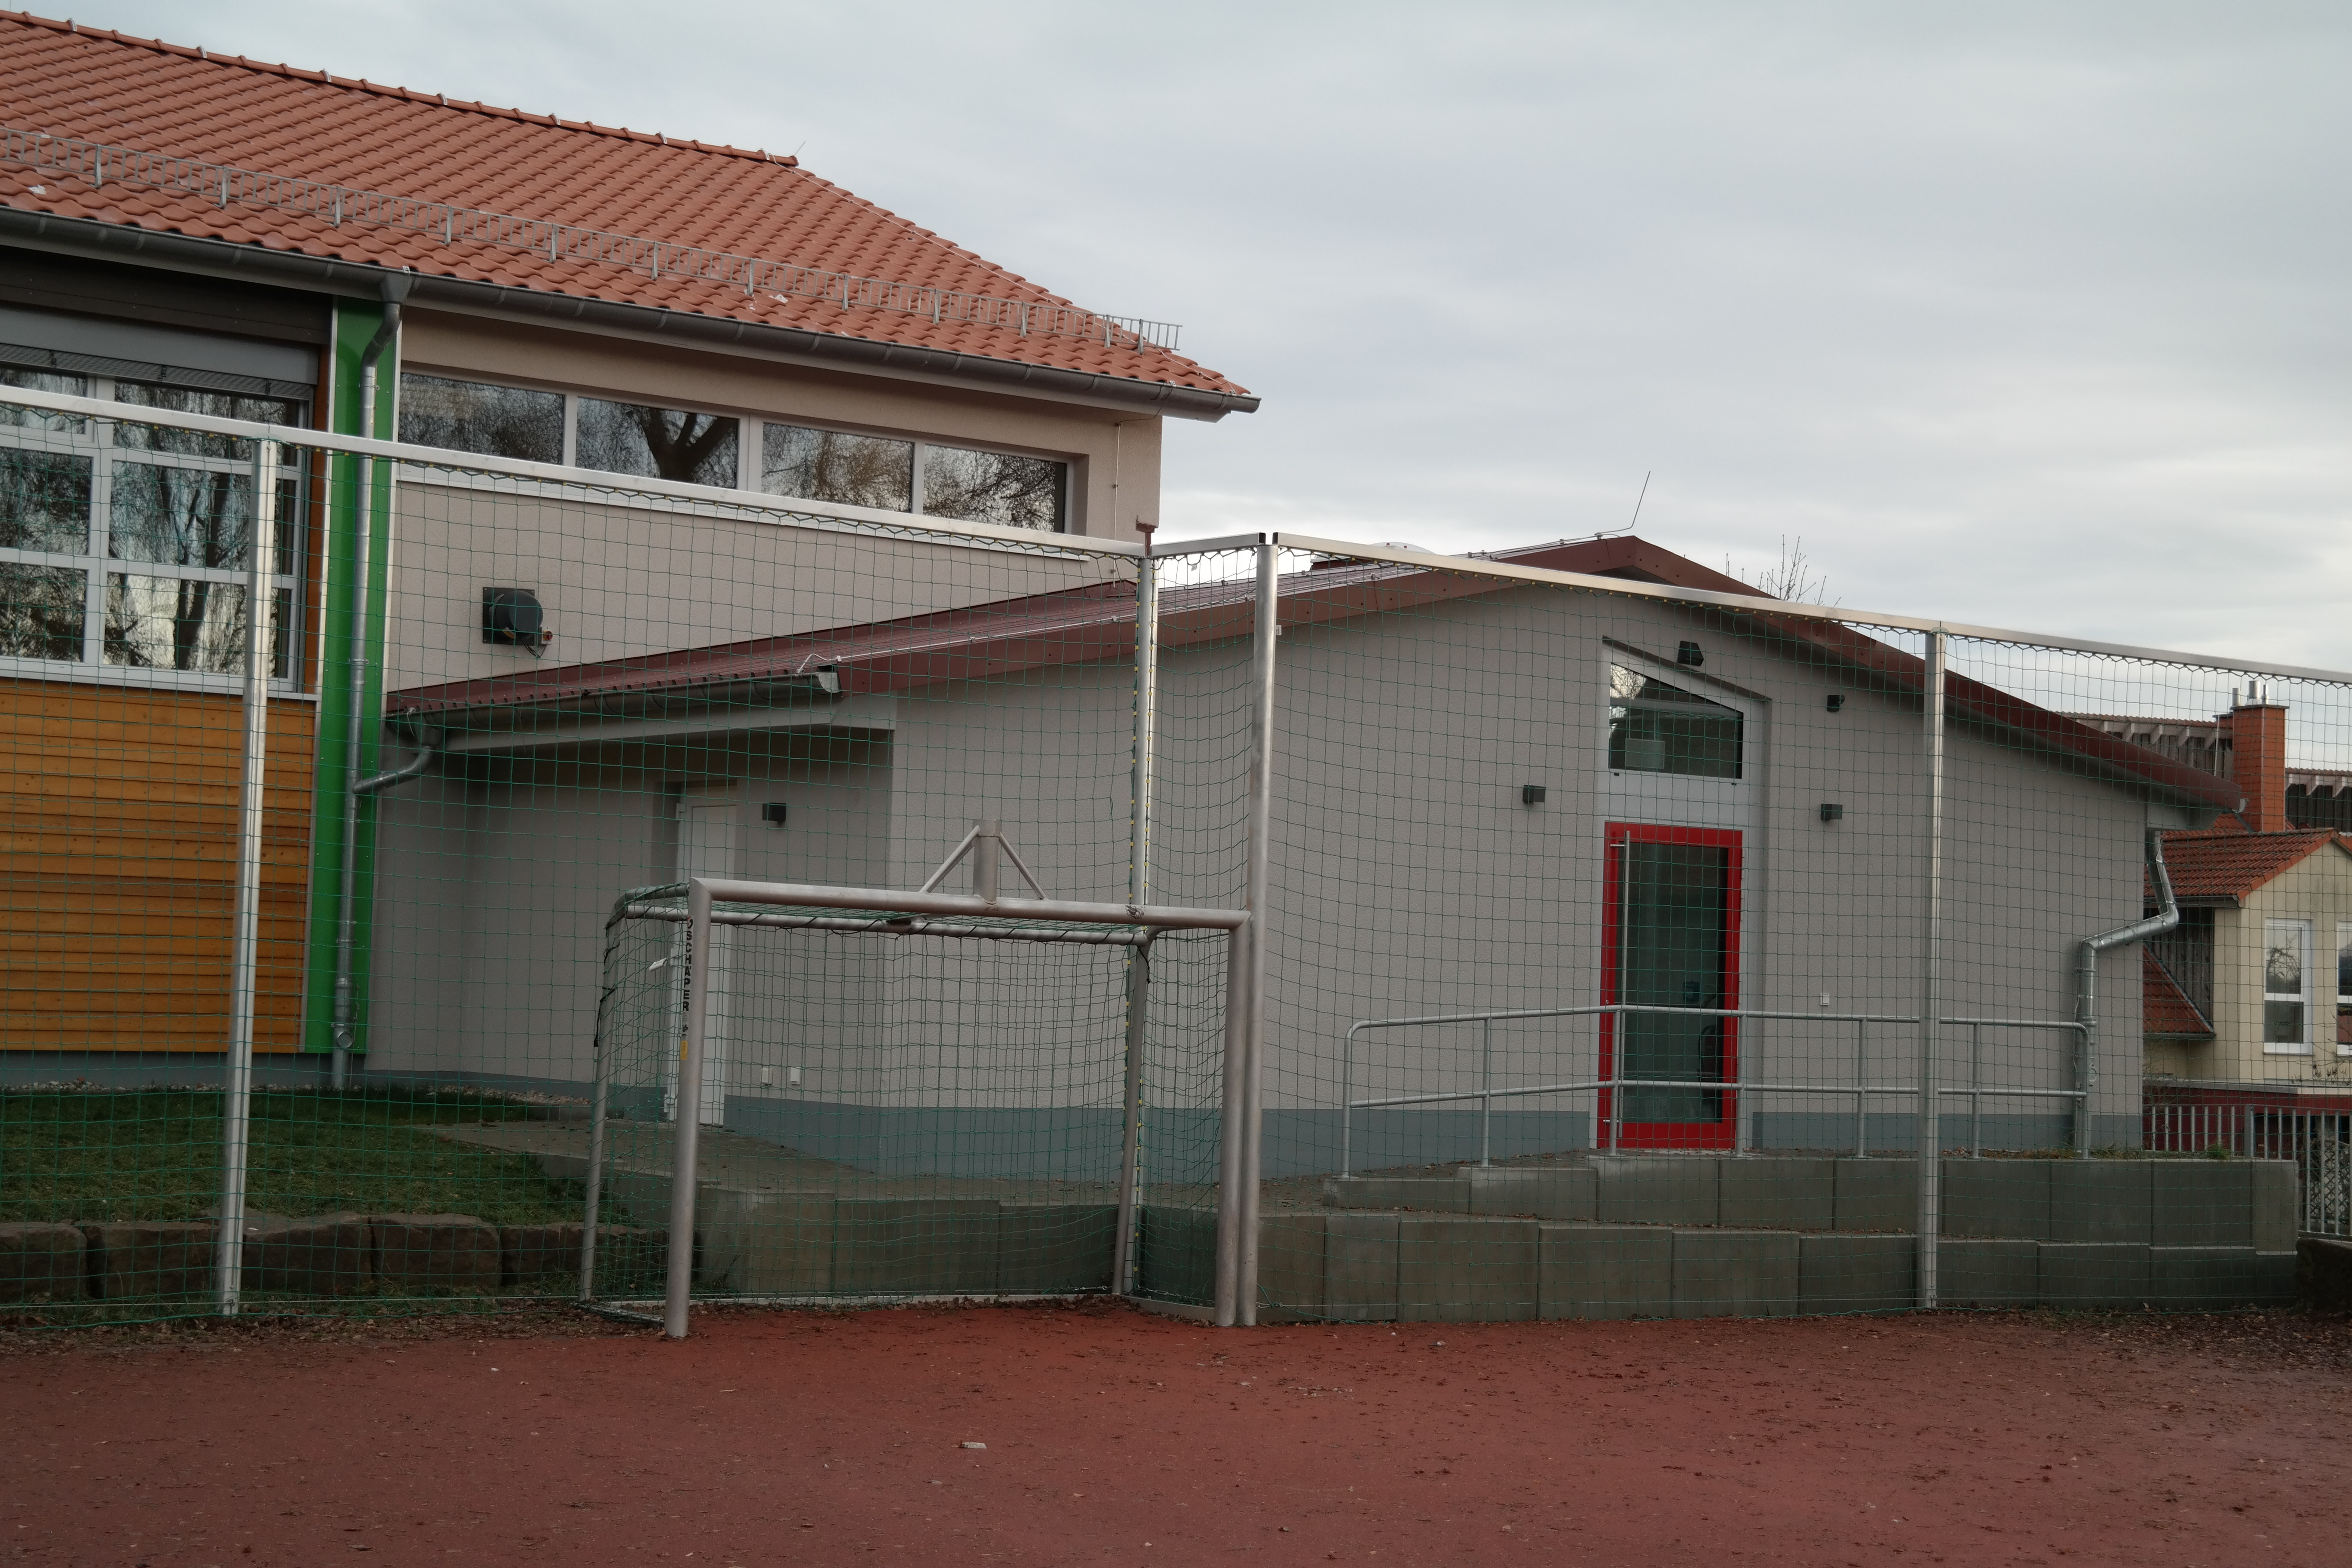 Das Bild zeigt die Rückseite einer Sporthalle. Im Vordergrund sieht man einen Tennenplatz mit Tor und Fangzaun.